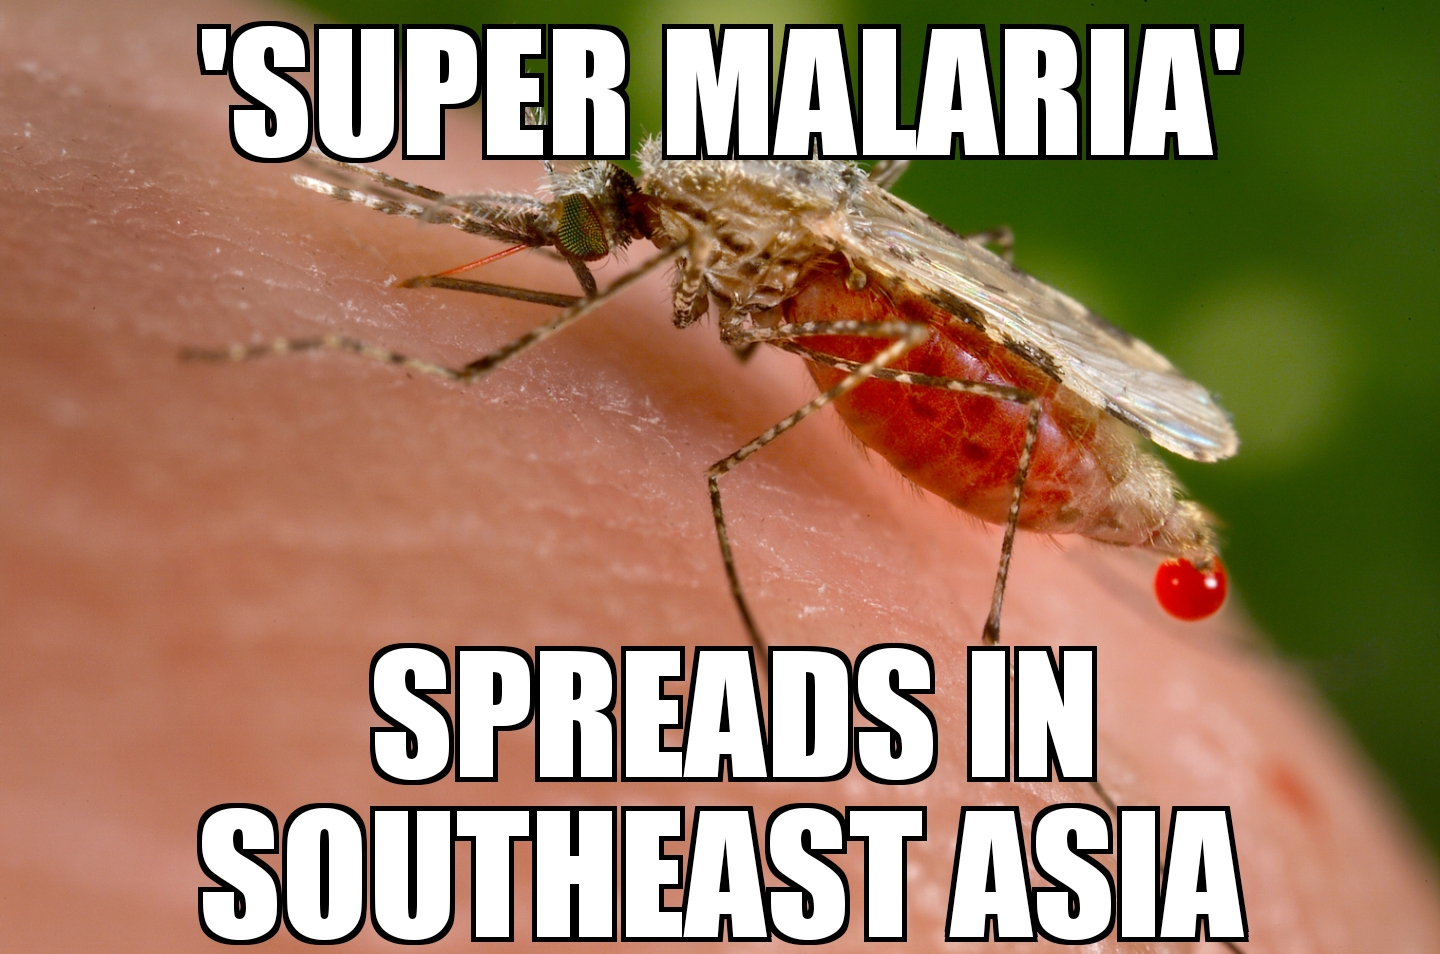 ‘Super malaria’ spreads